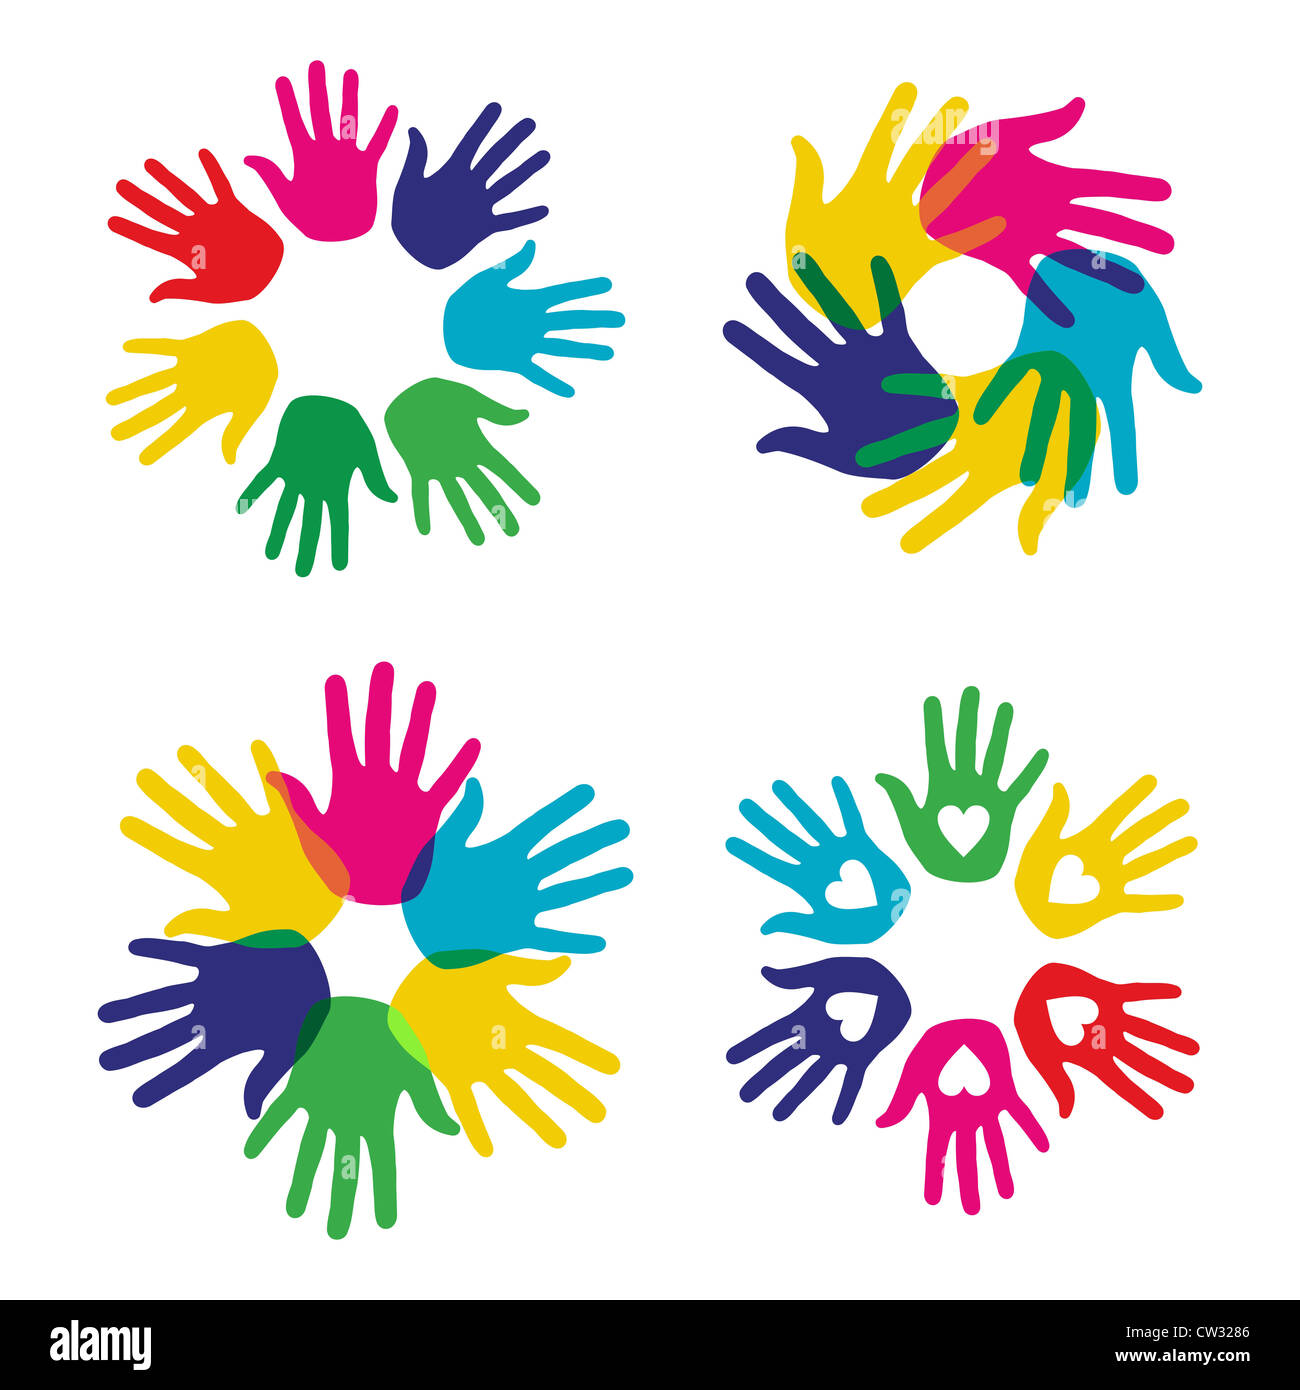 La diversité créative multicolore série des symboles les mains. Couches d'illustration vectorielle pour une manipulation facile et coloris. Banque D'Images